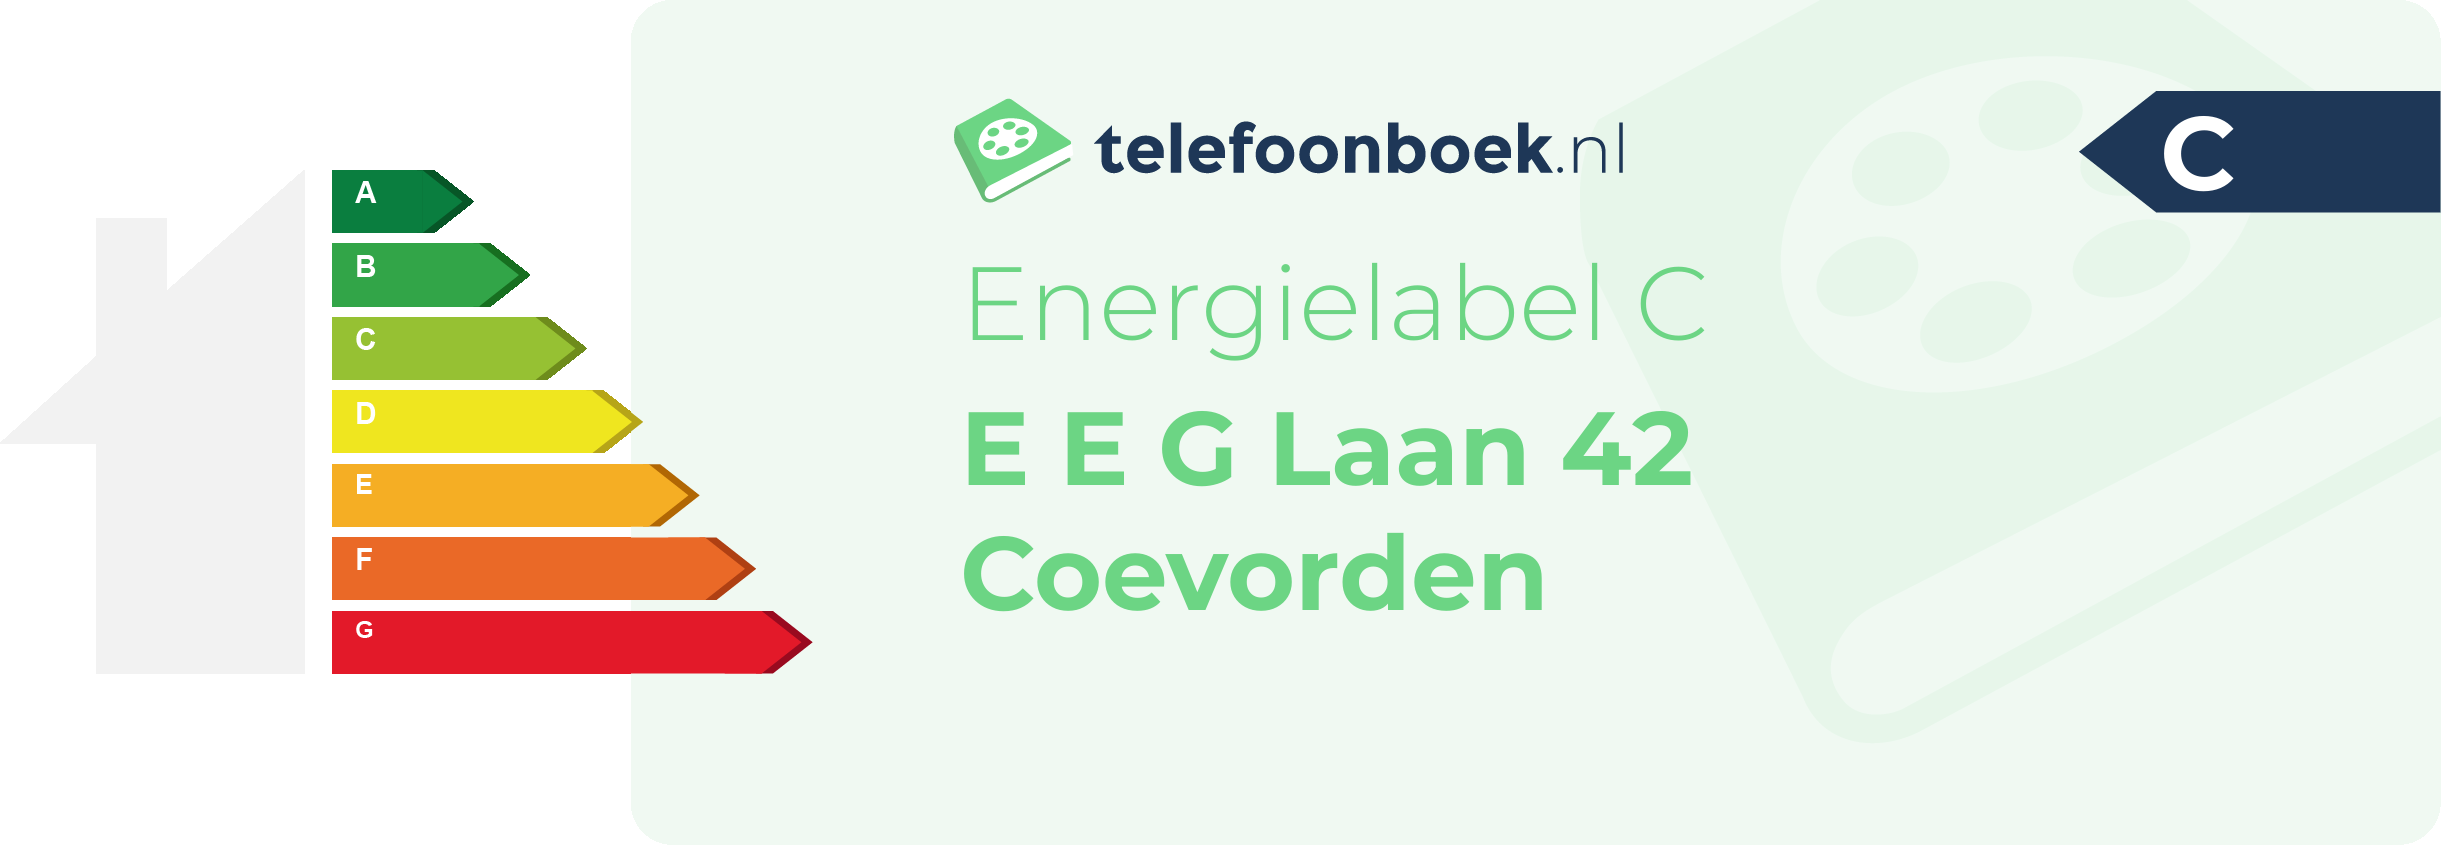 Energielabel E E G Laan 42 Coevorden